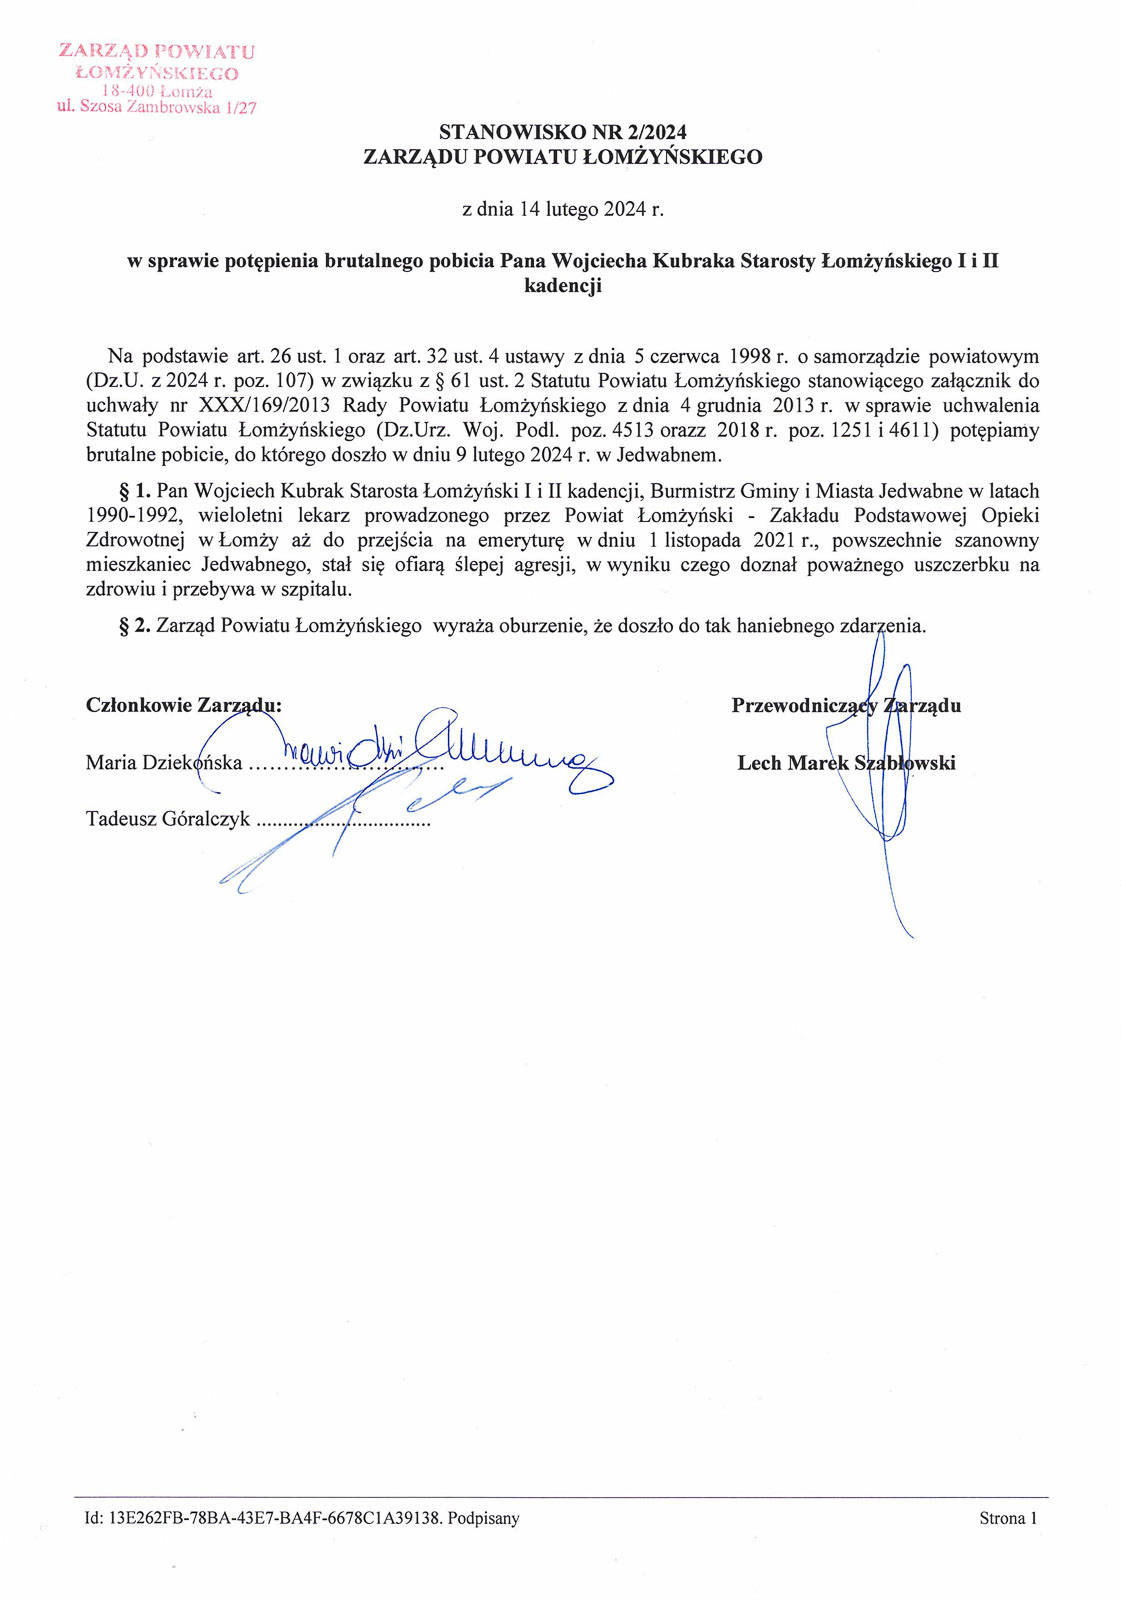 Stanowisko Zarządu Powiatu Łomżyńskiego_000171.jpg